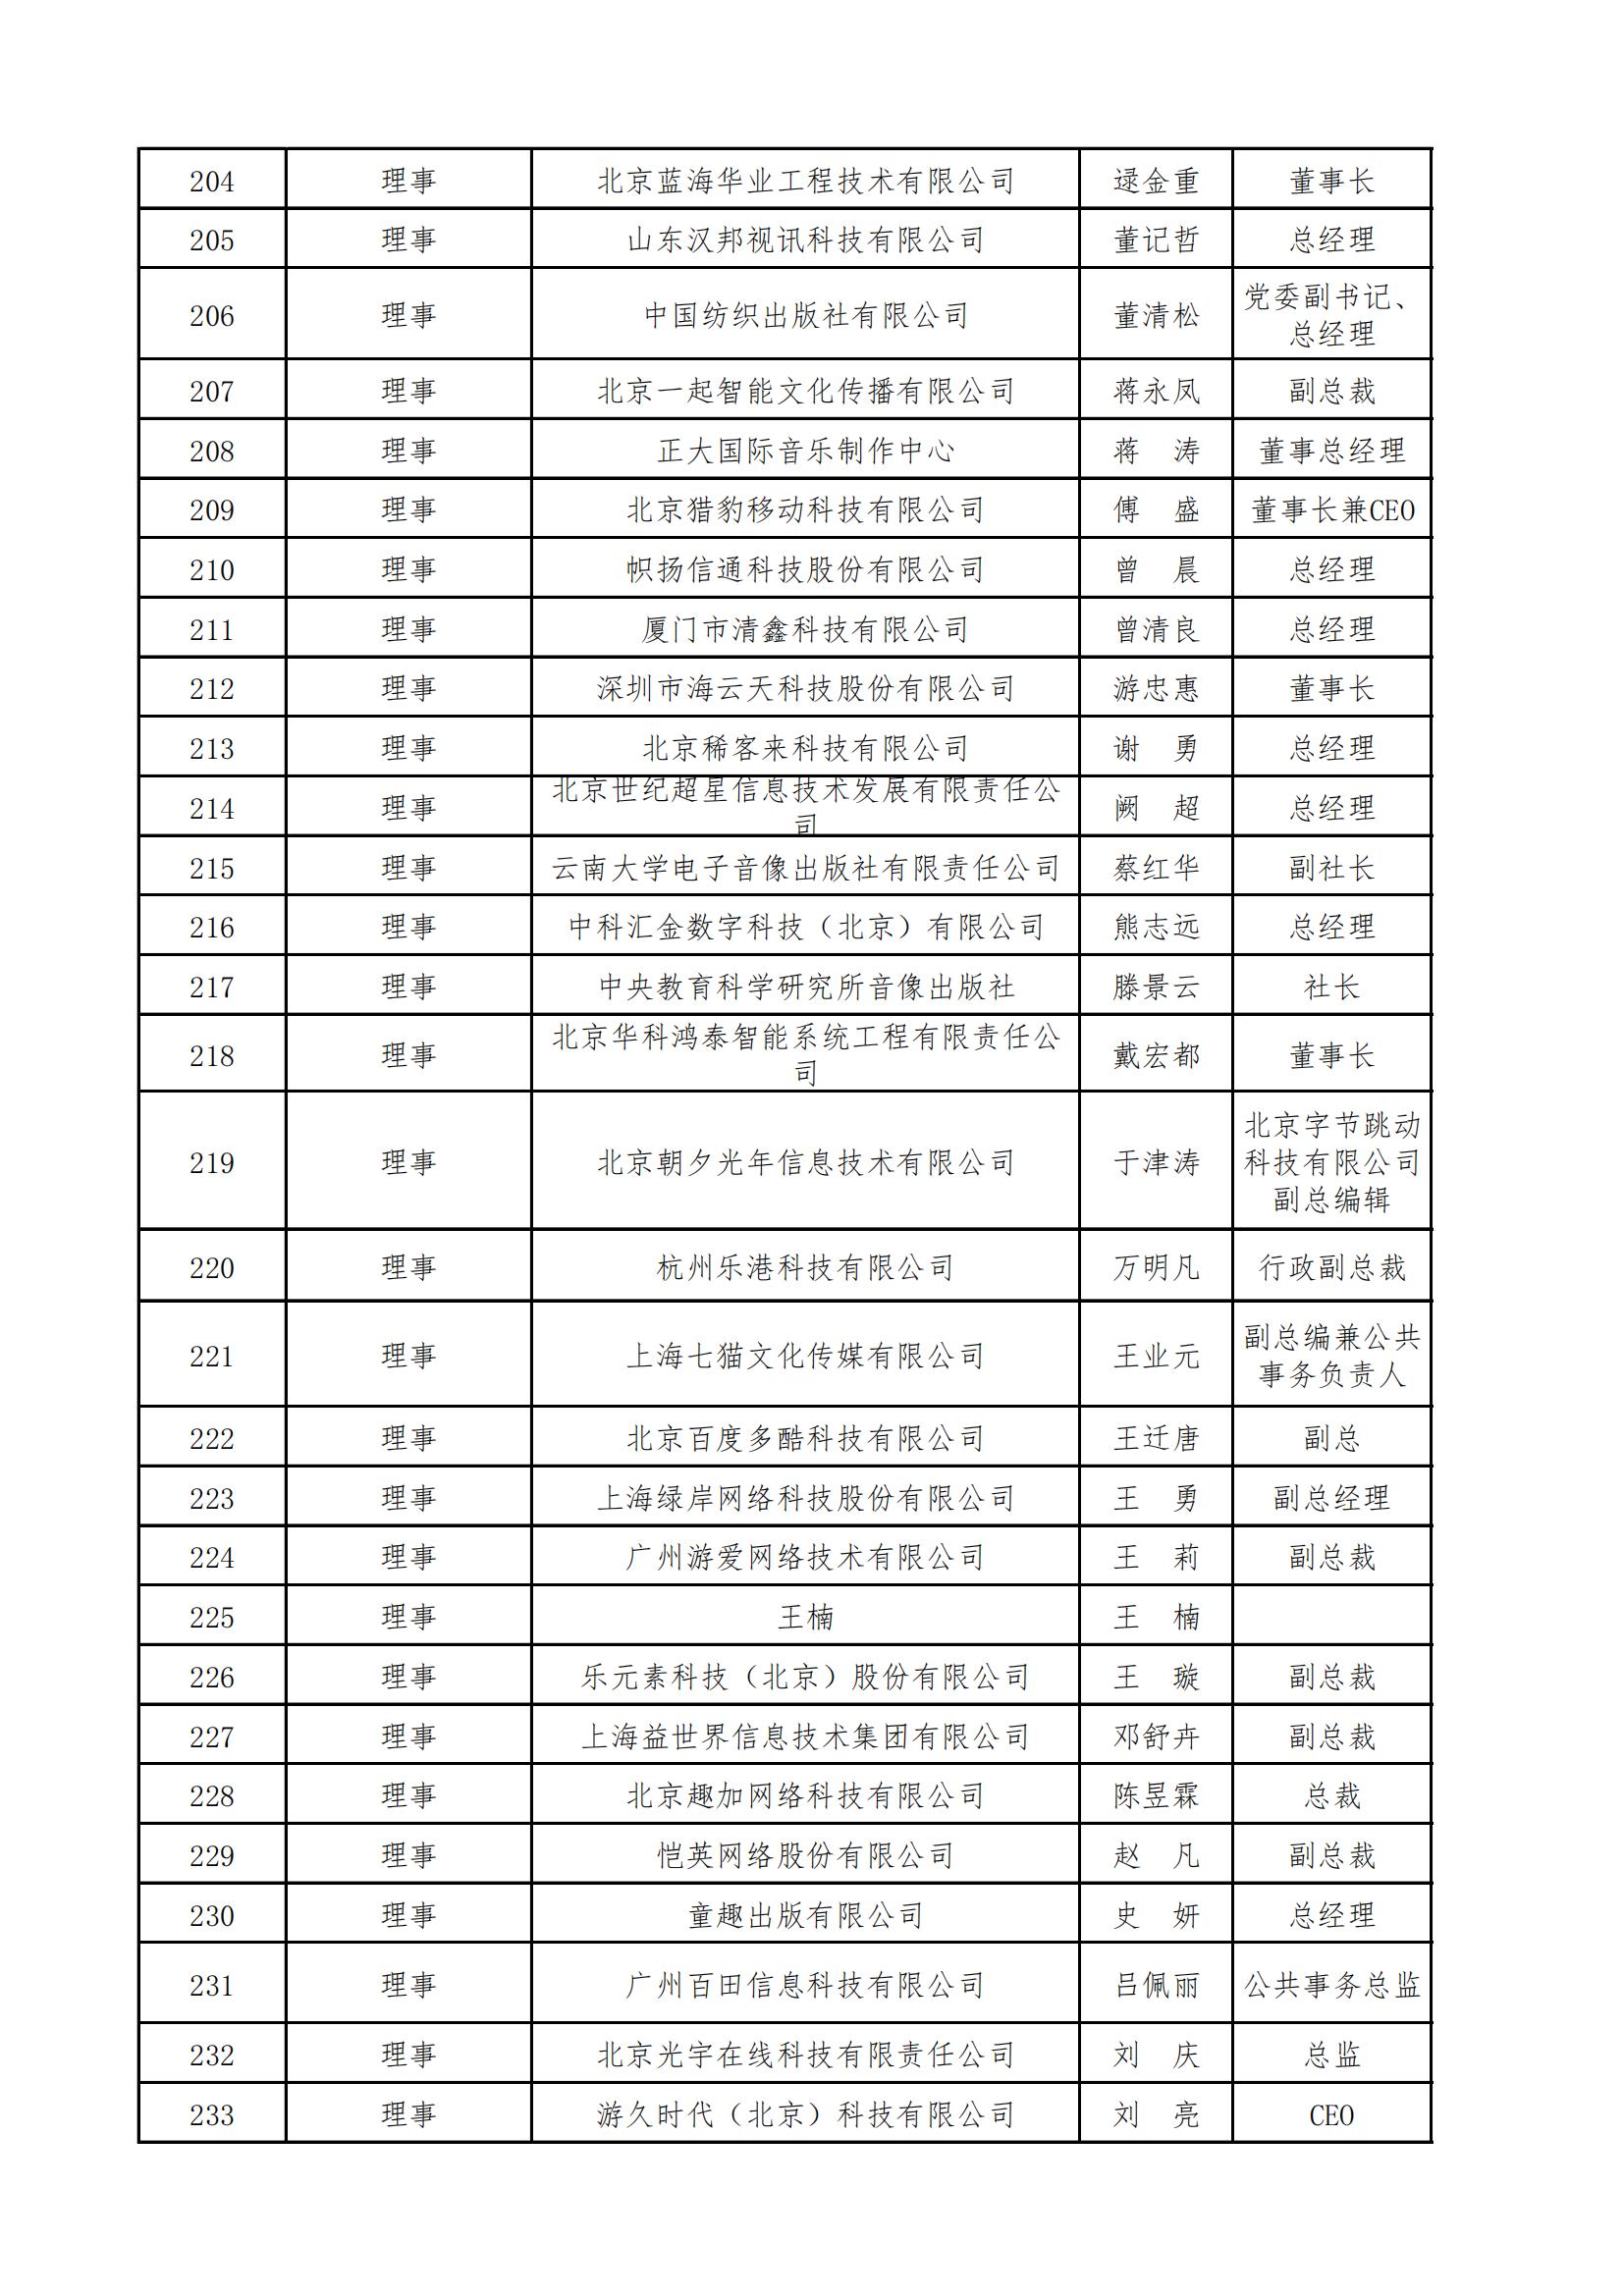 中国音像与数字出版协会第五届理事会名录_07.jpg